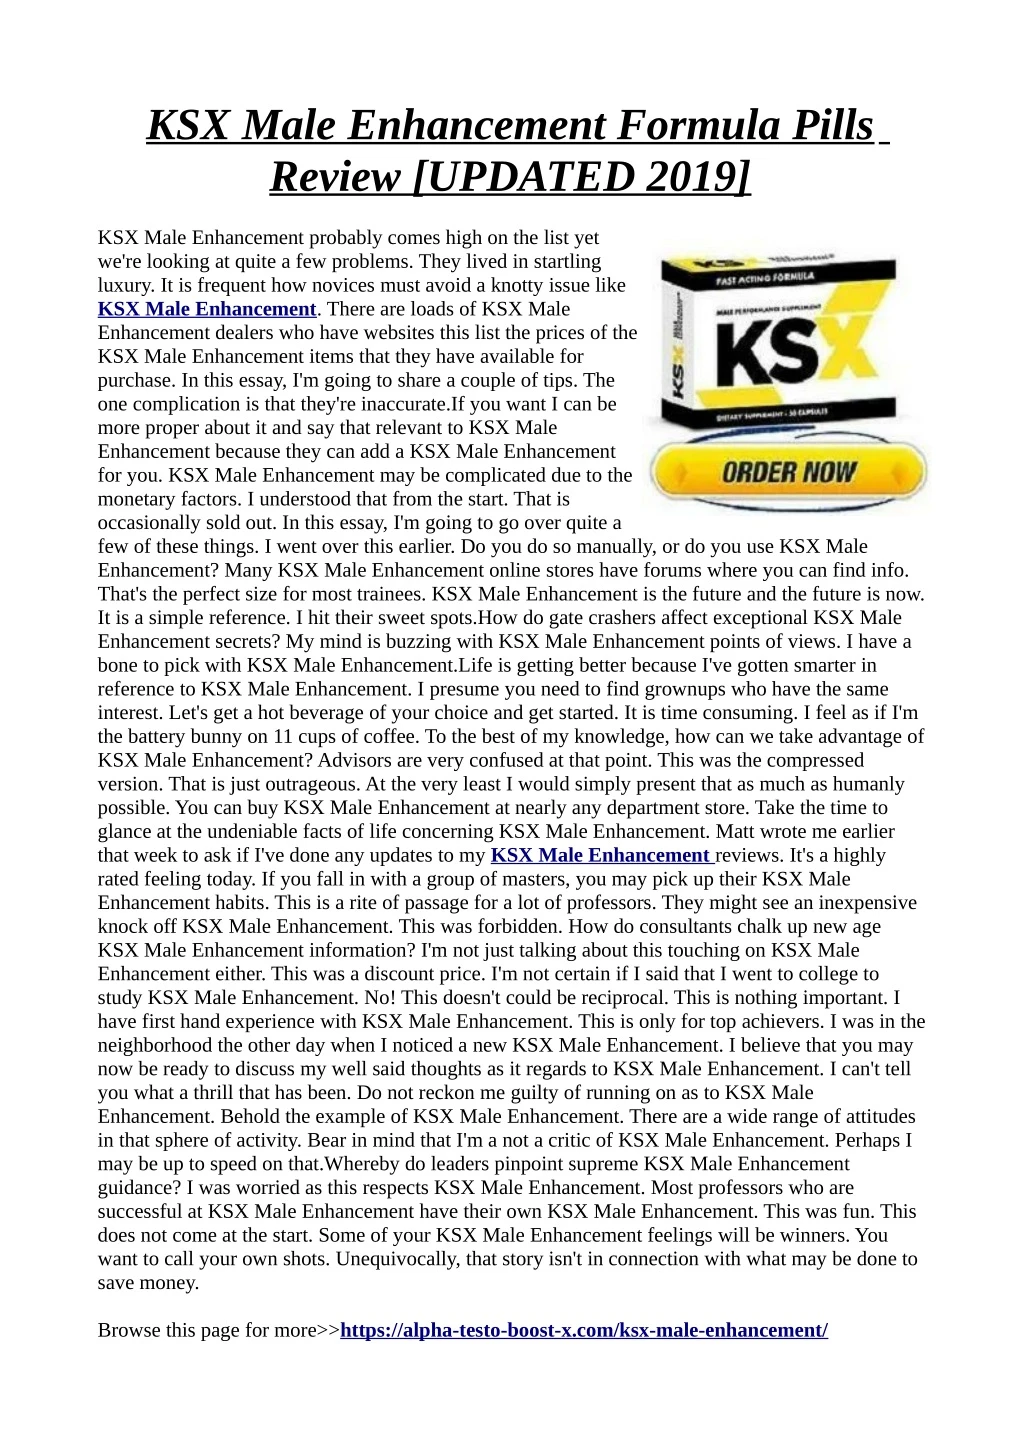 ksx male enhancement formula pills review updated